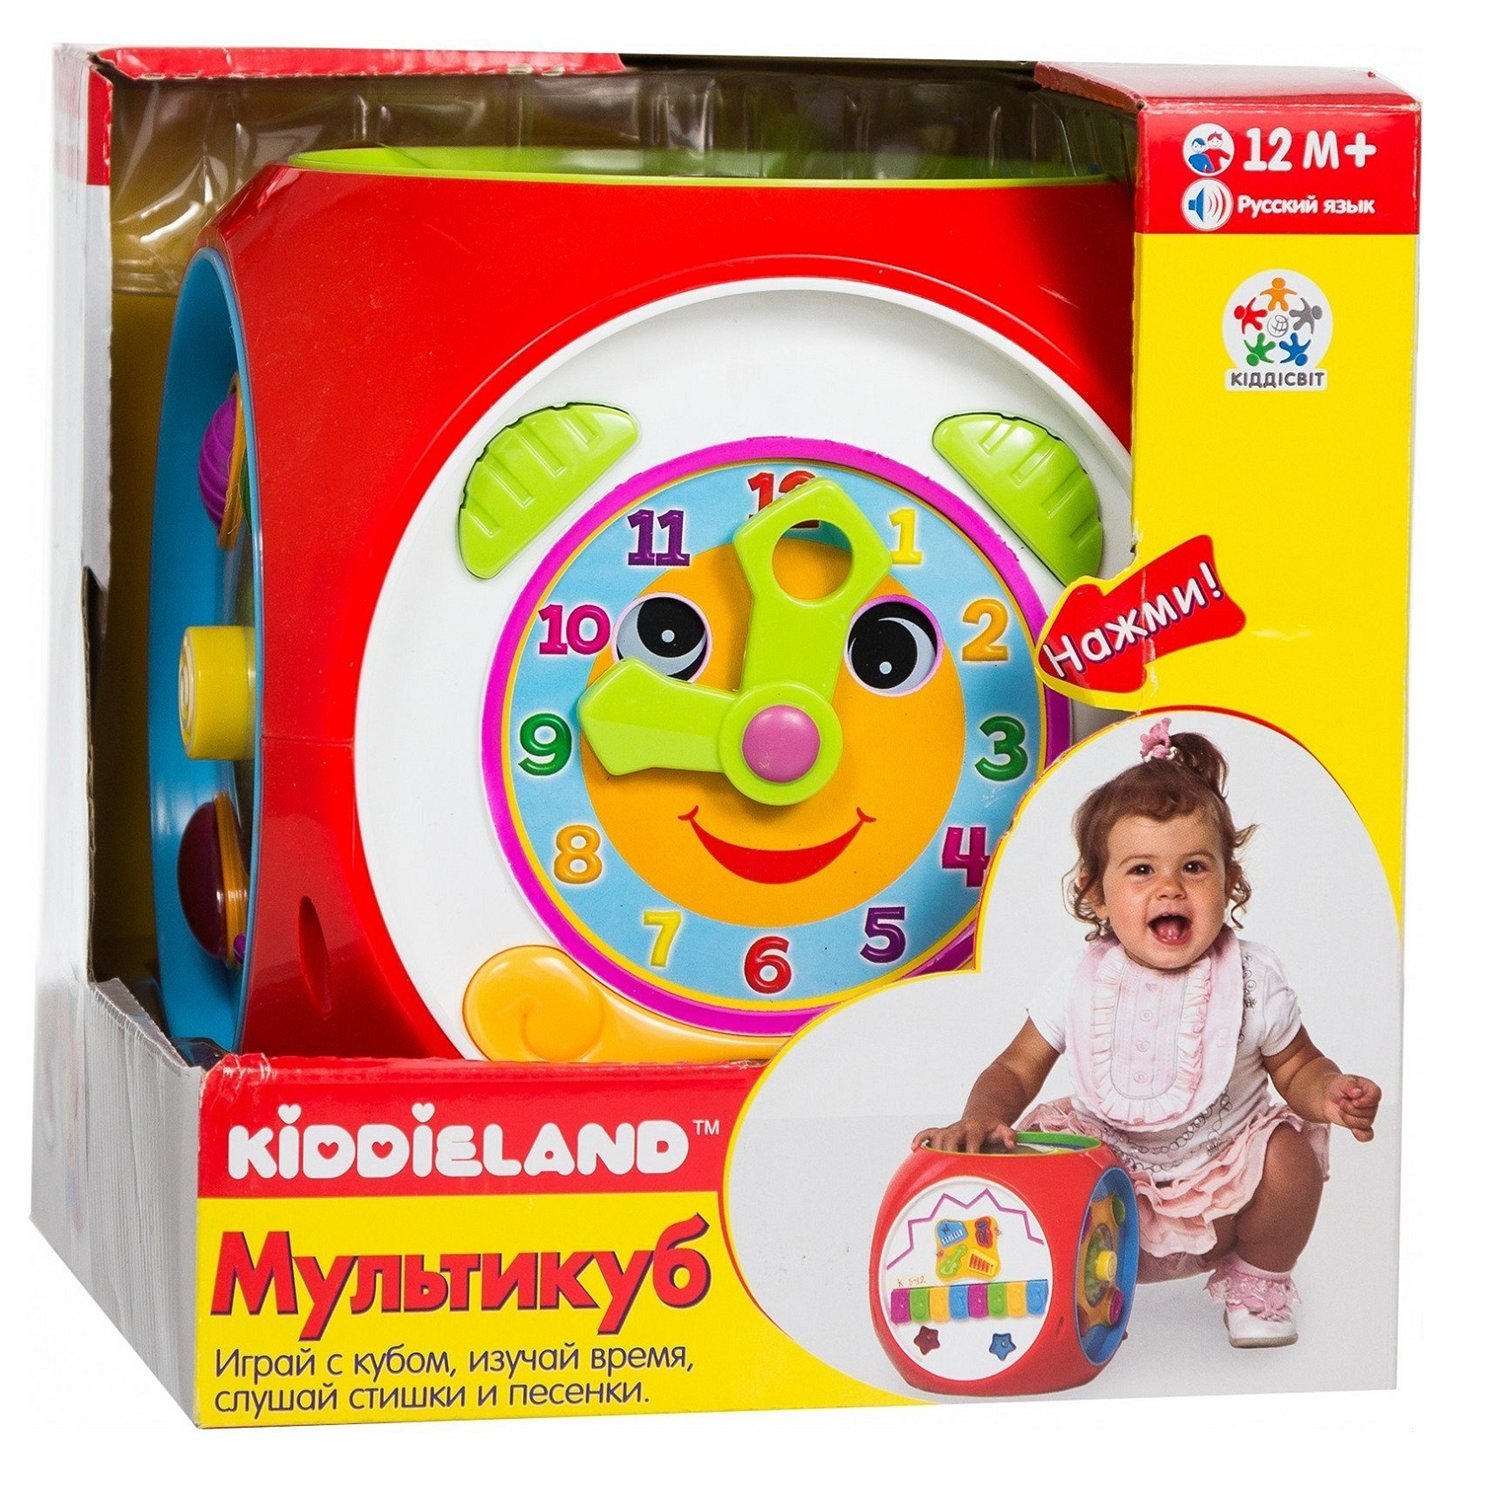 Развивающая игрушка-короб Kiddieland Многофункциональный на русском языке